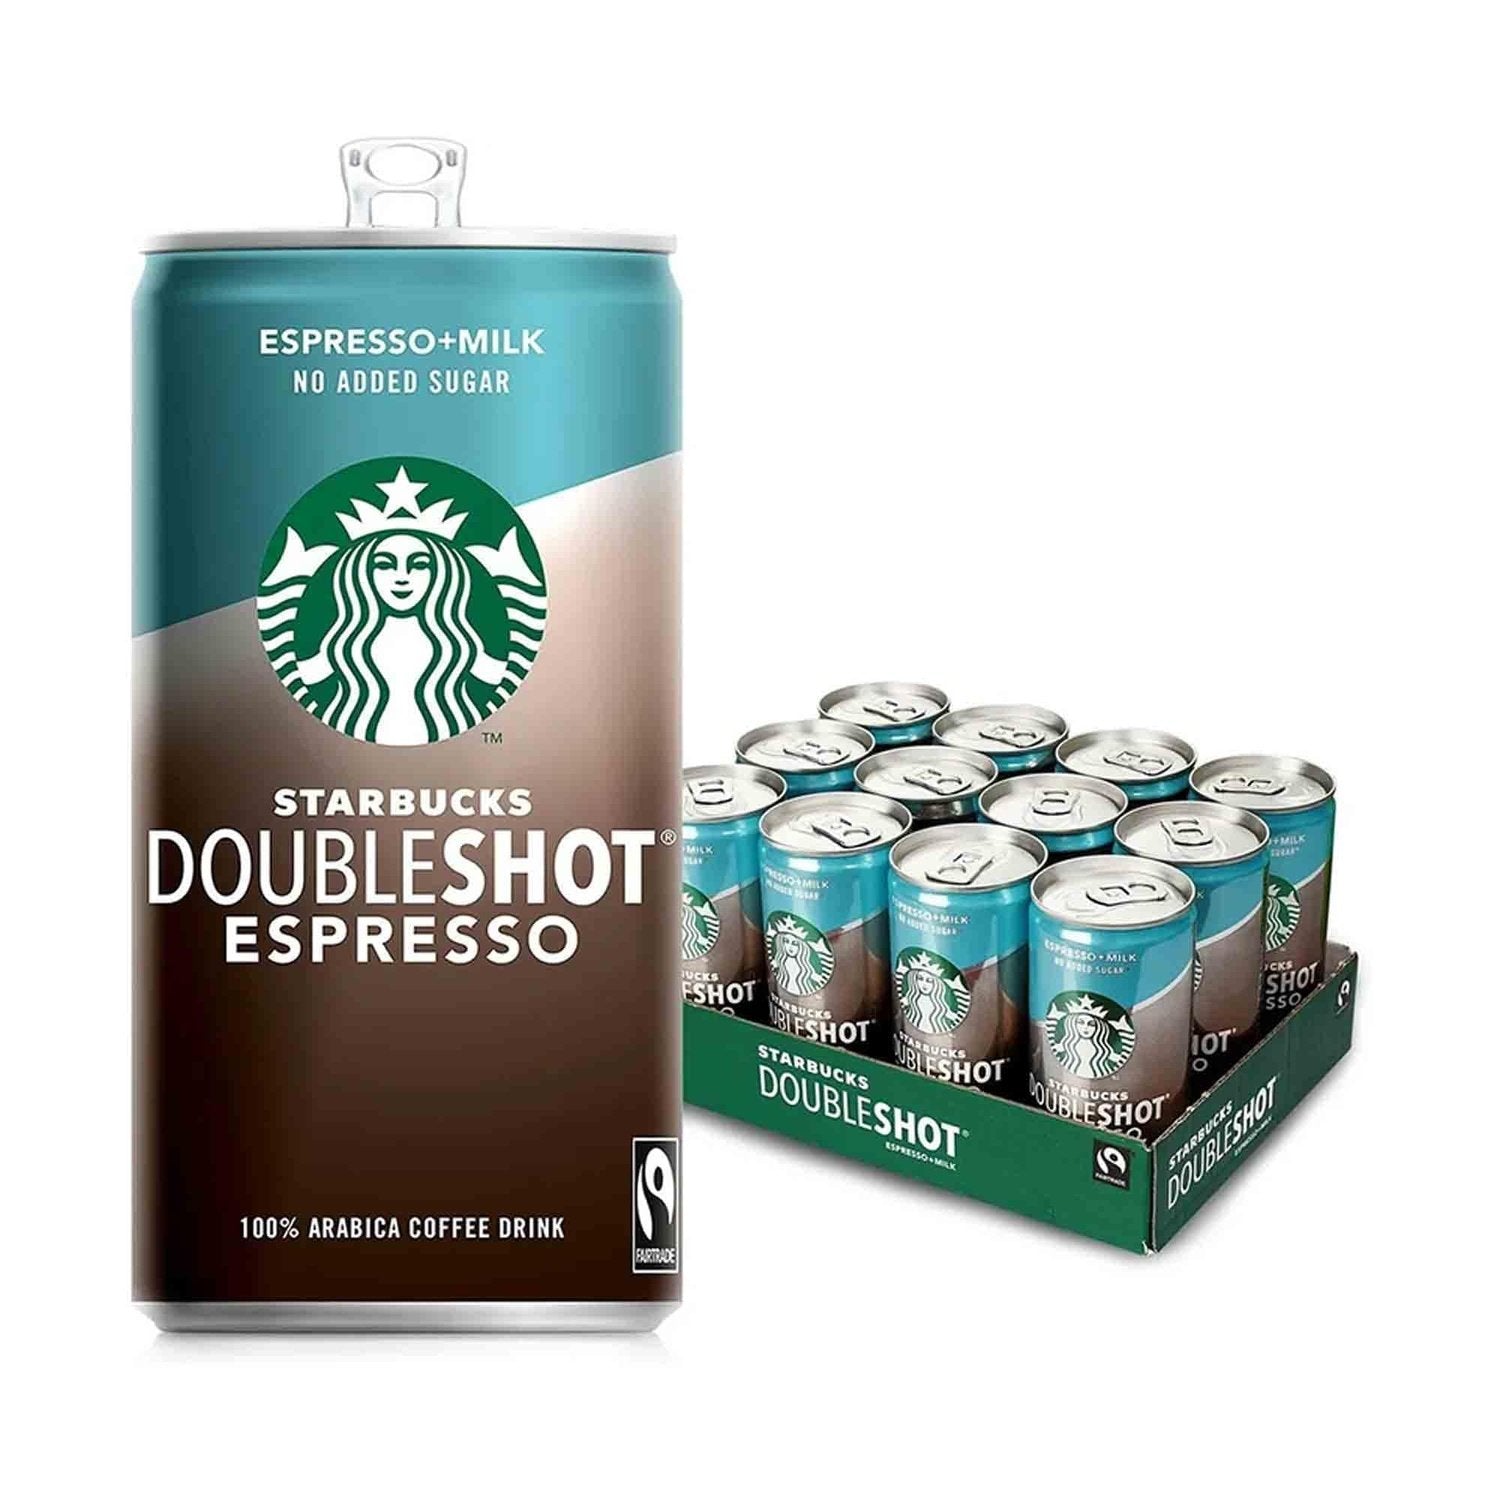 Starbucks Starbucks Doubleshot Espresso 12 x 200 ml Milk (No Added Sugar) kaufen bei HighPowered.ch